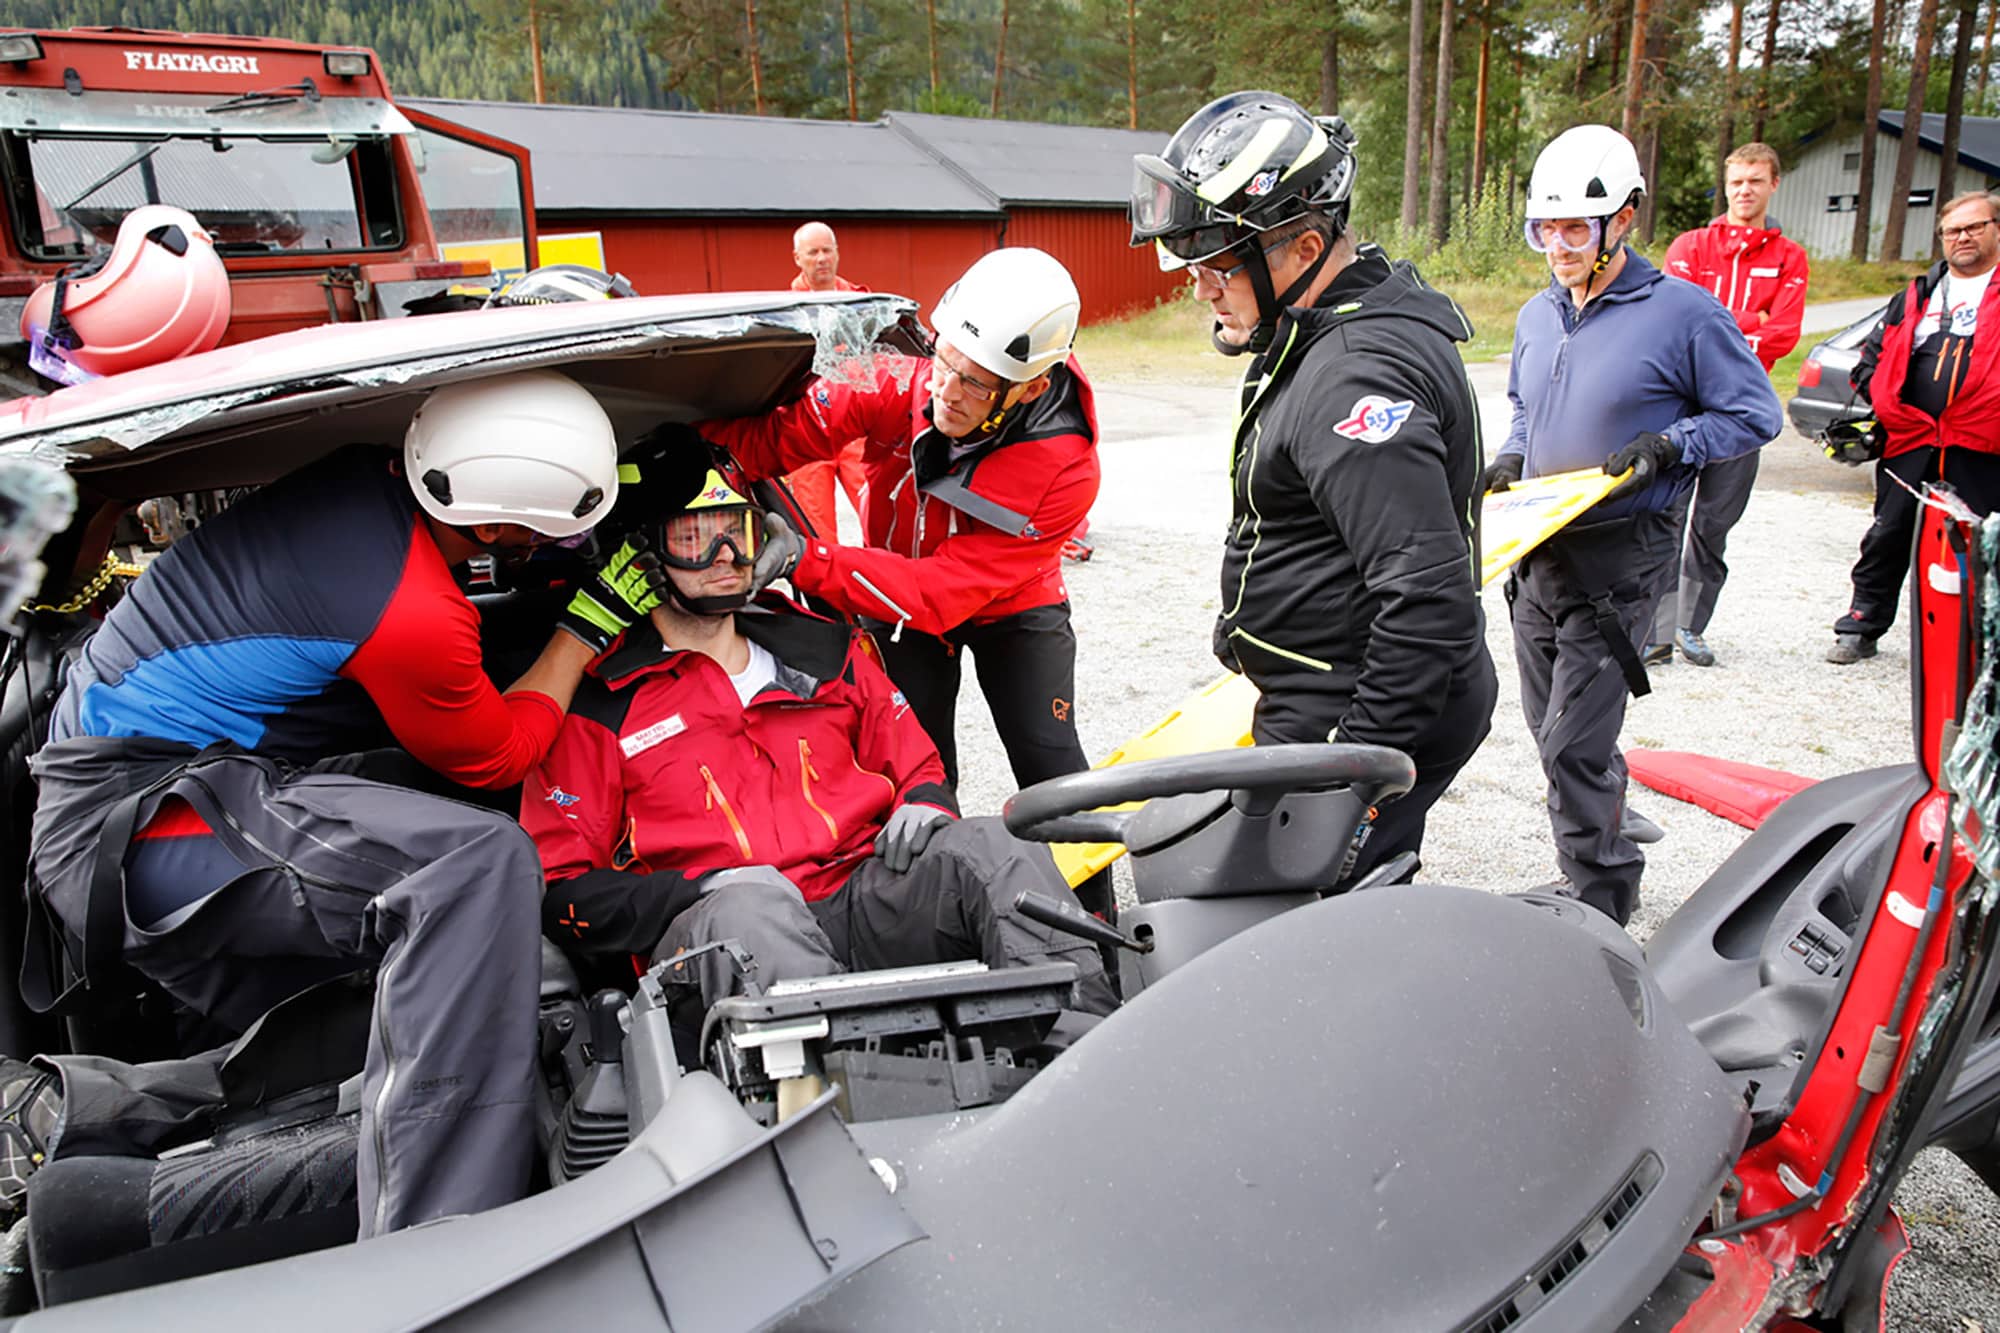 Lege og redningsmann evakuerer pasient fra bilvrak under øvelse i hurtigfrigjøring. Blir vurdert av øvelsesleder.